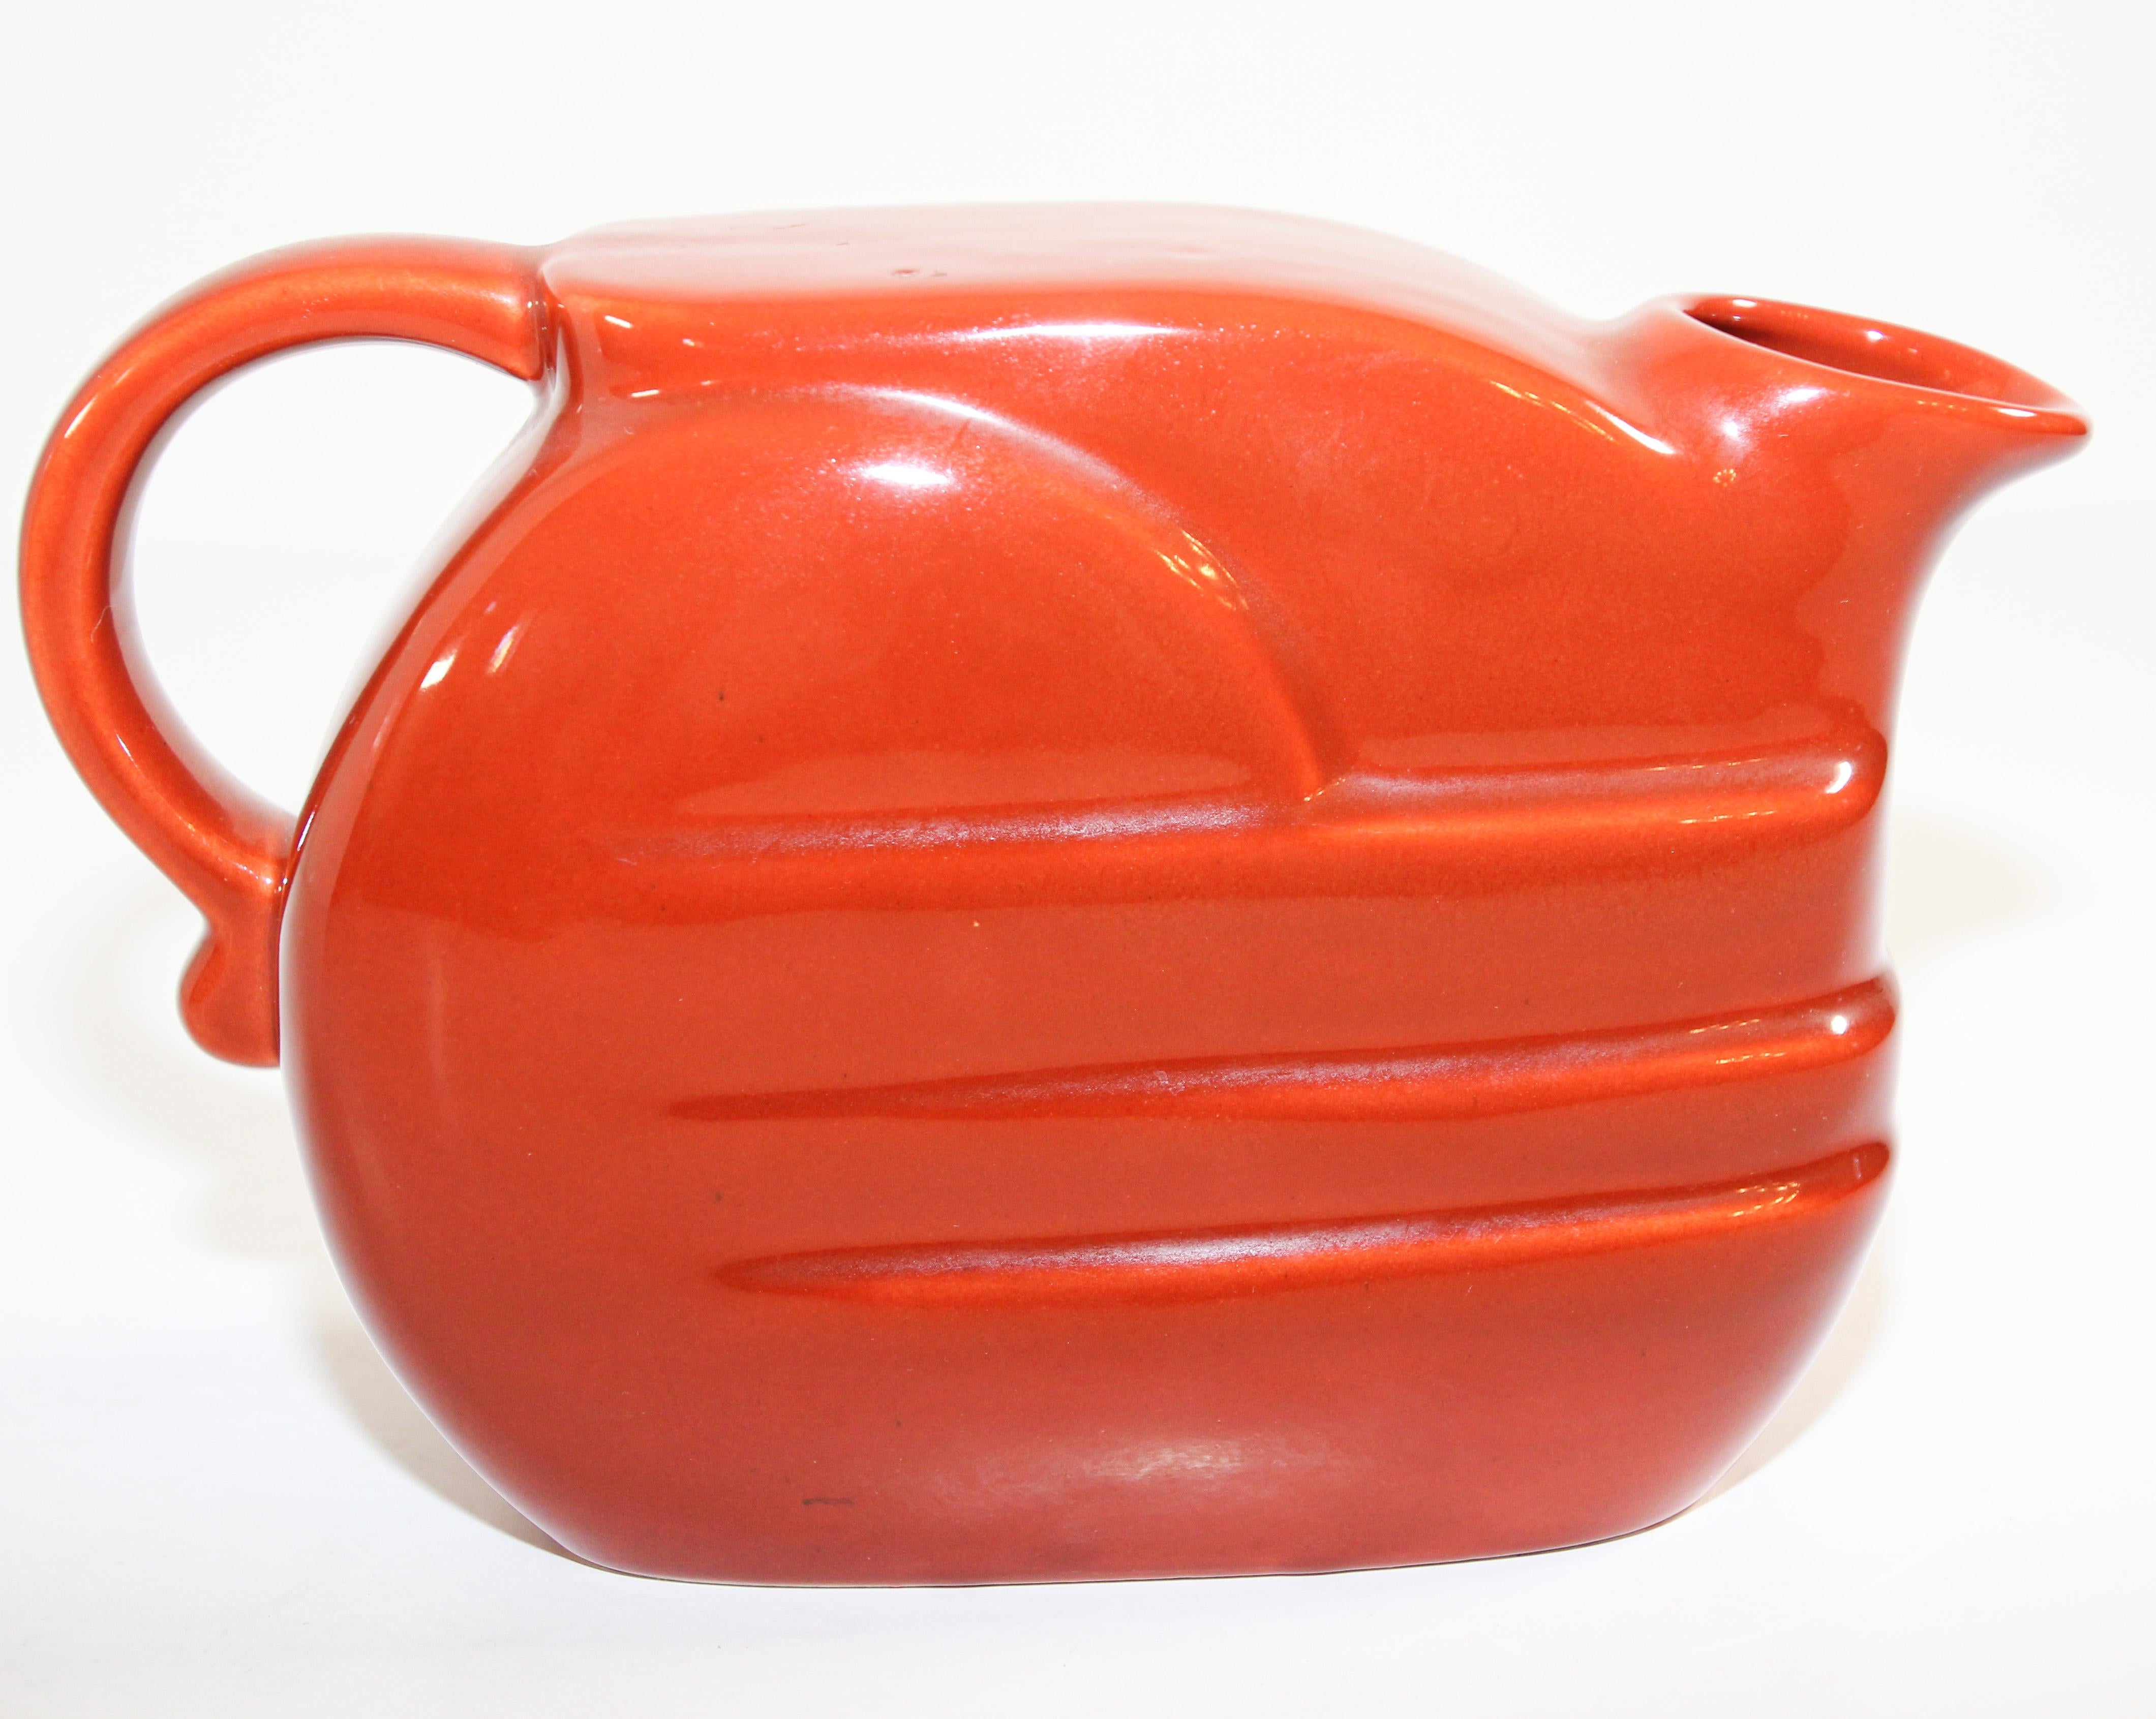 Leuchtend orangefarbener Krug aus der Mitte des Jahrhunderts, entworfen in den 1960er Jahren von Joseph Magnin.
Lebendige italienische Keramik glasiert orange retro barware Krug mit Griff in einer modernen stilisierten Form.
Der Keramikkrug wurde in